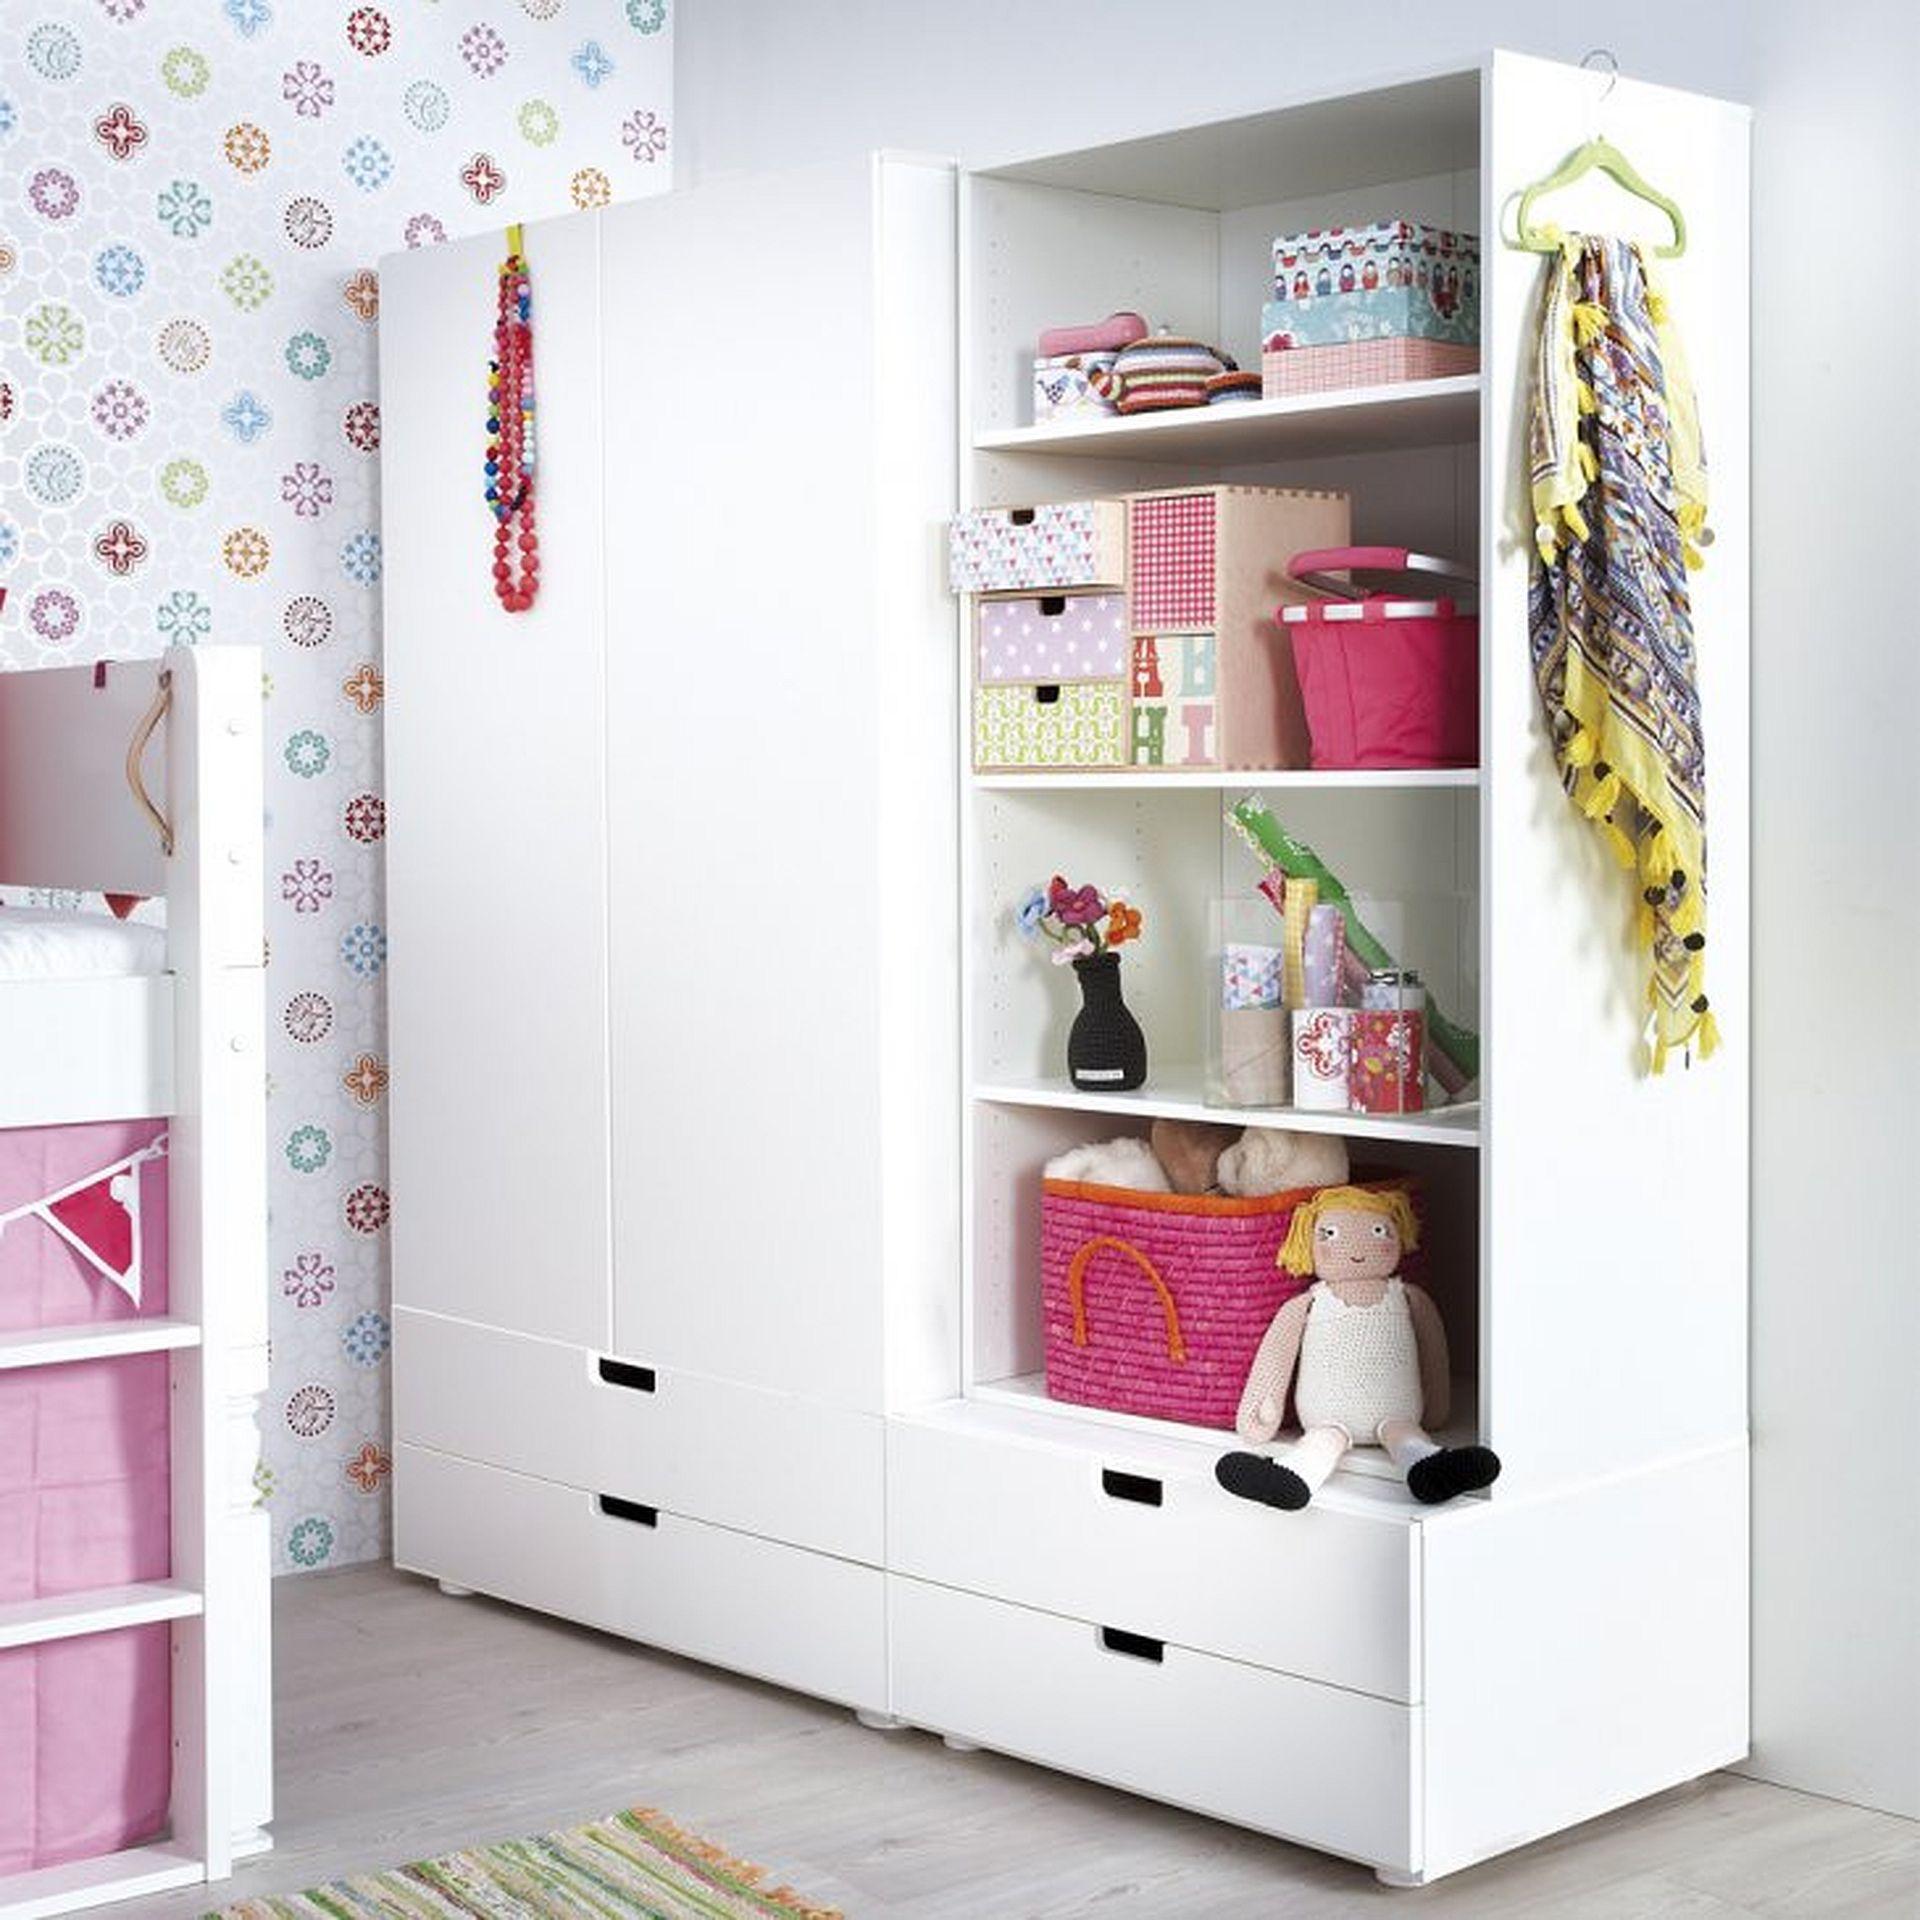 Как выбрать удобный шкаф в детскую комнату?